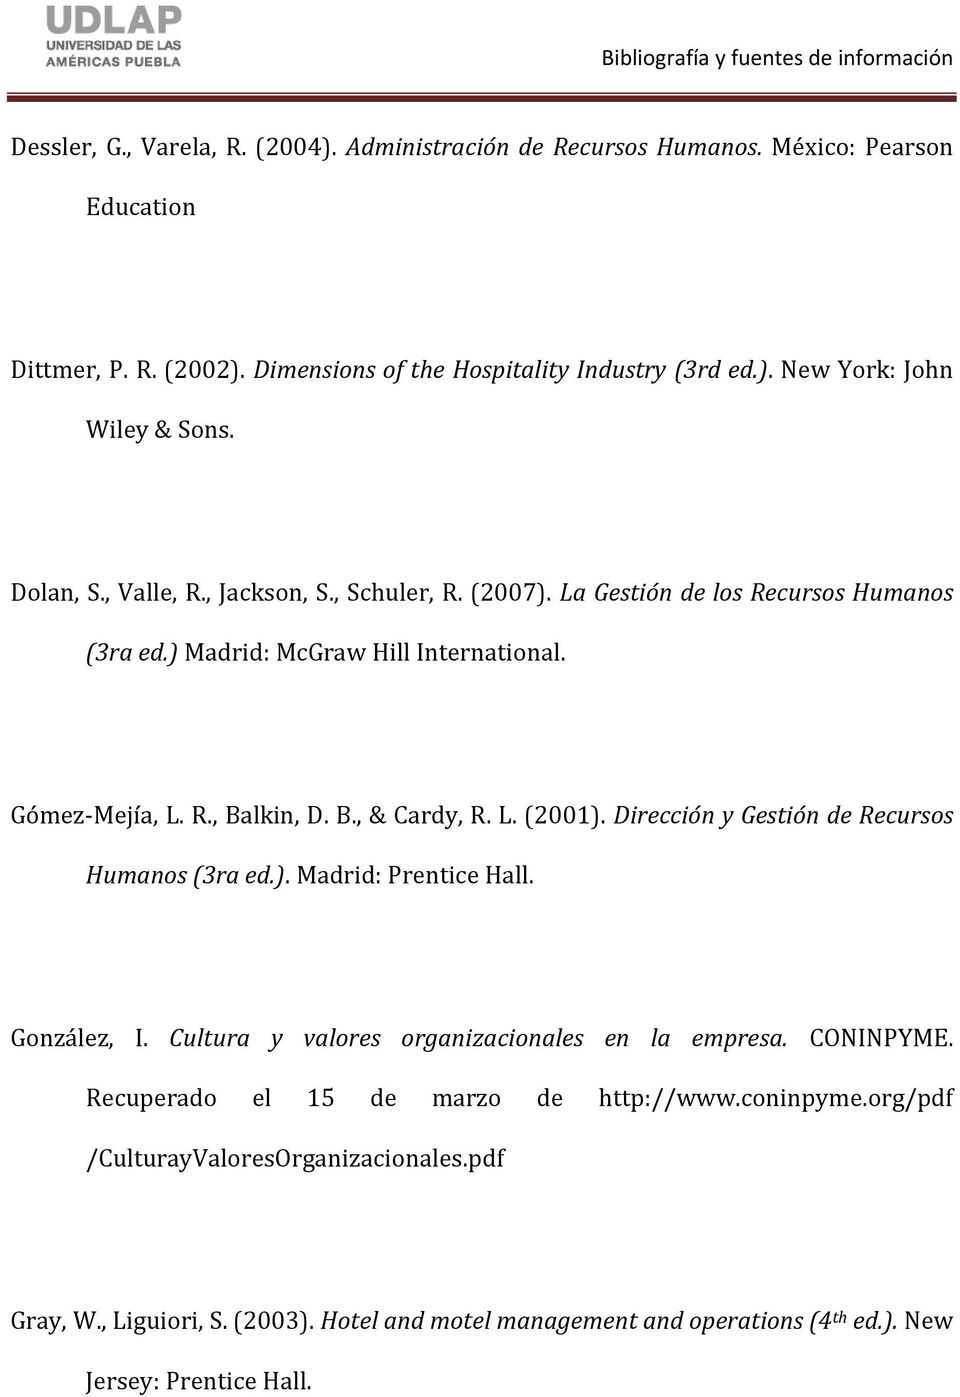 Dirección y Gestión de Recursos Humanos (3ra ed.). Madrid: Prentice Hall. González, I. Cultura y valores organizacionales en la empresa. CONINPYME.